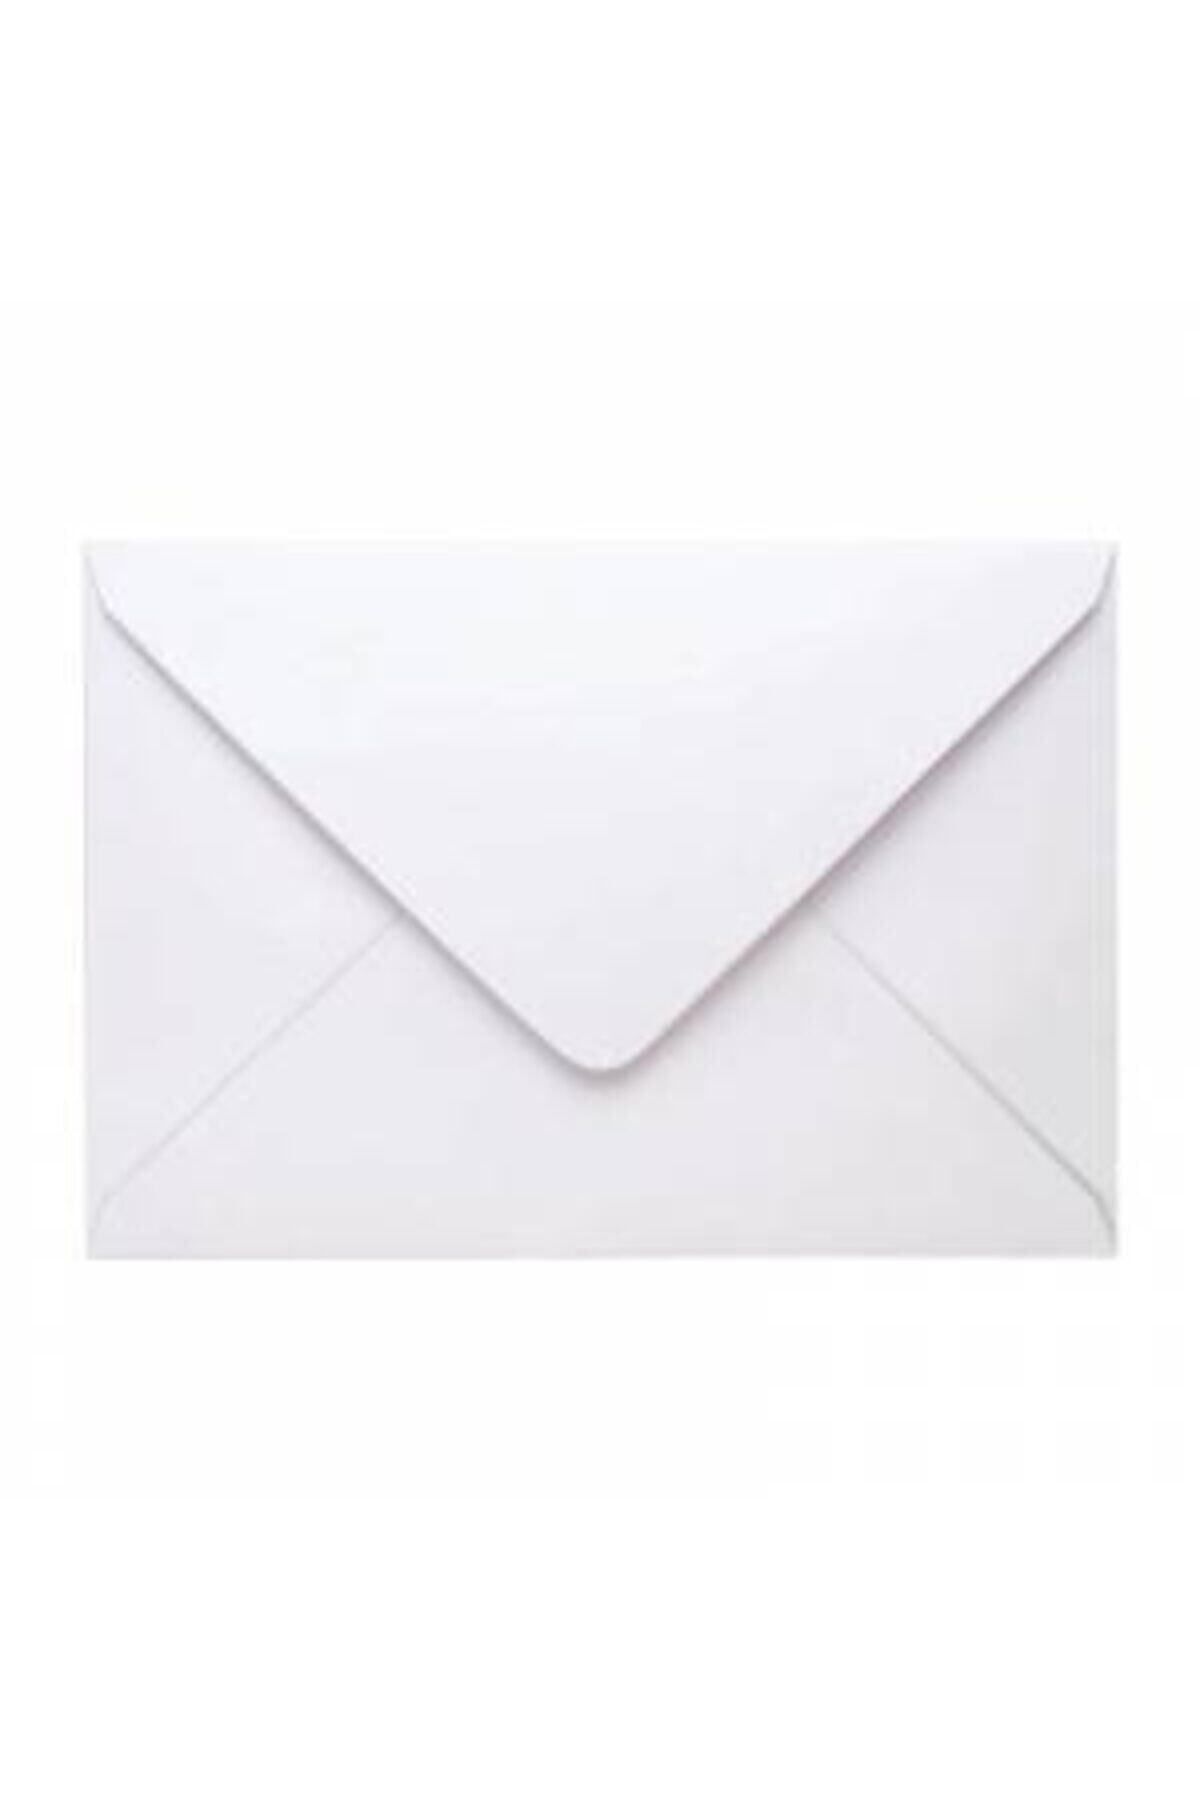 hırdawhat Kare Mektup Zarfı 11.4x16.2 Cm 70 Gram 100 Adet